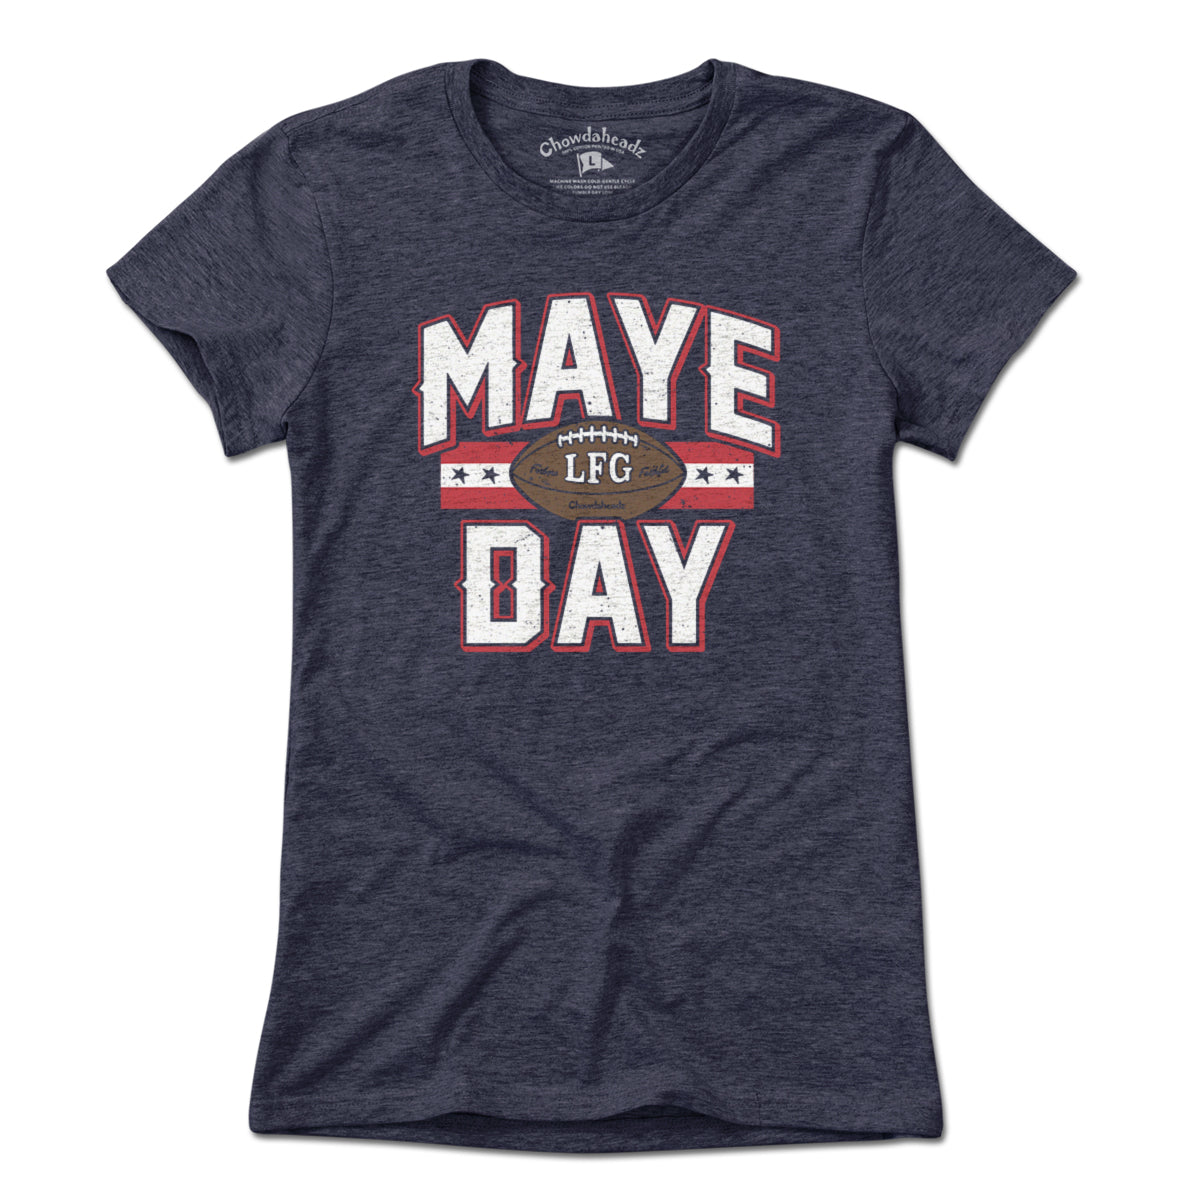 Maye Day Football T-Shirt